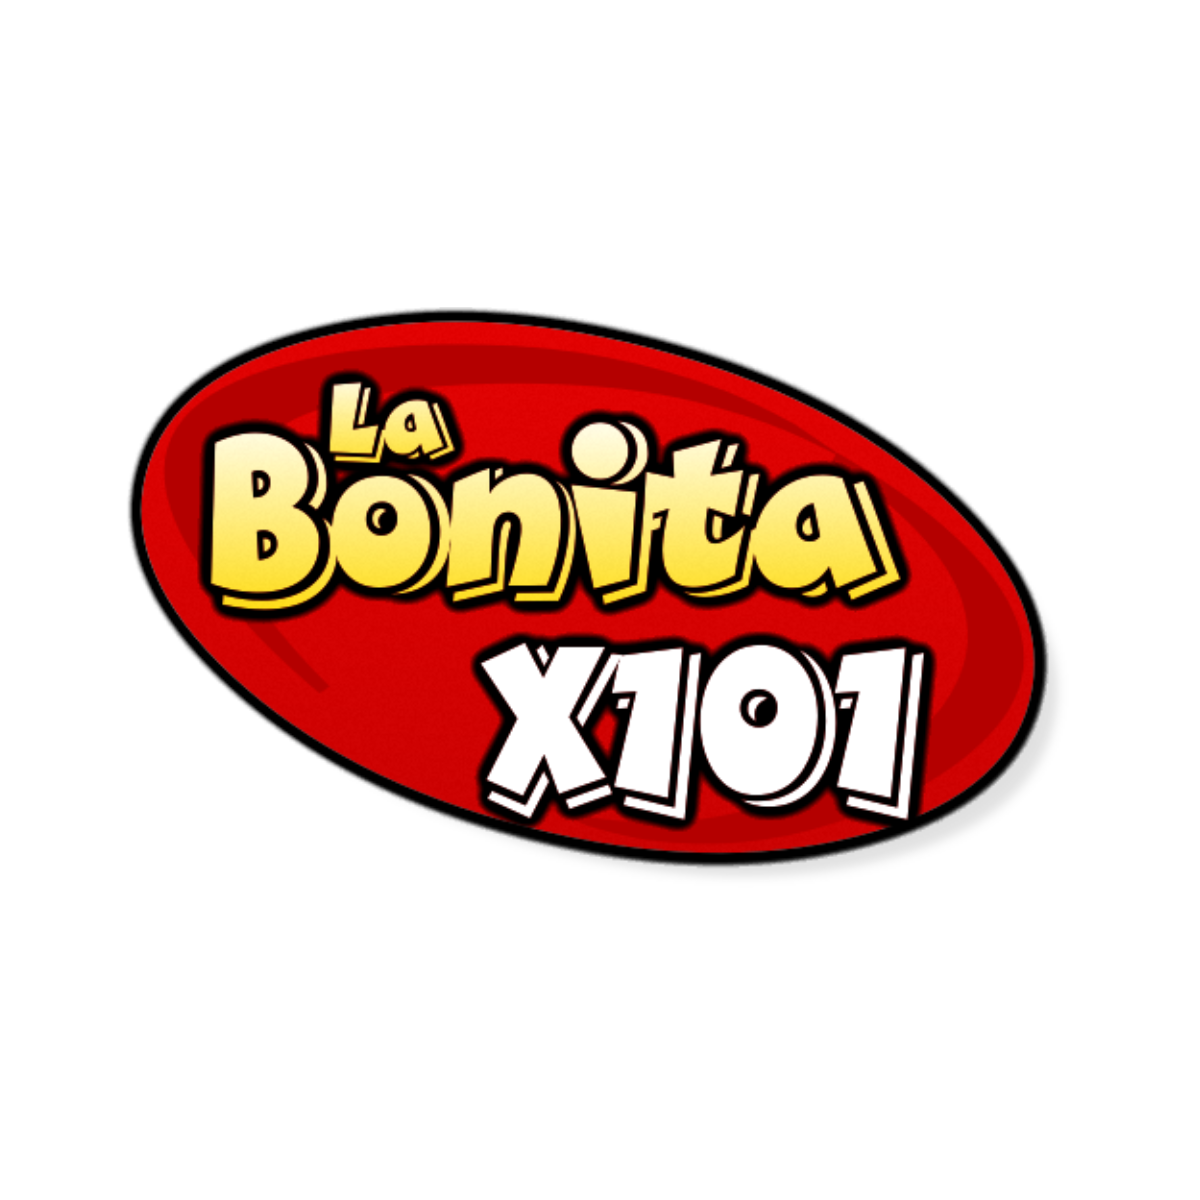 Listen to live La Bonita X101